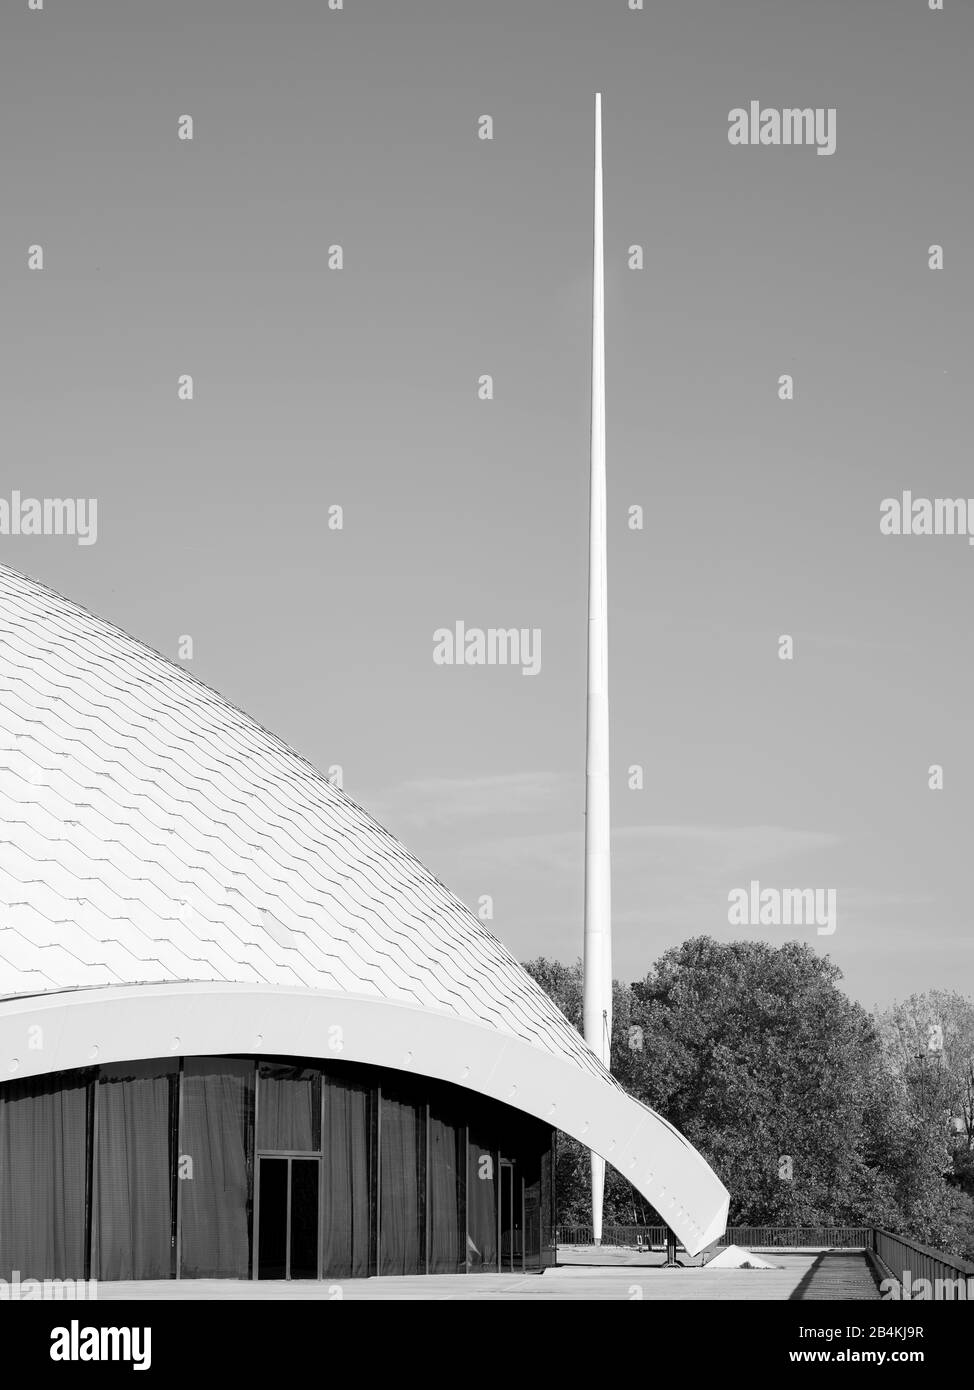 Das Schalendach und seine Randversteifung der Jahrhunderthalle Frankfurt mit dem charakteristischen Mast Foto Stock